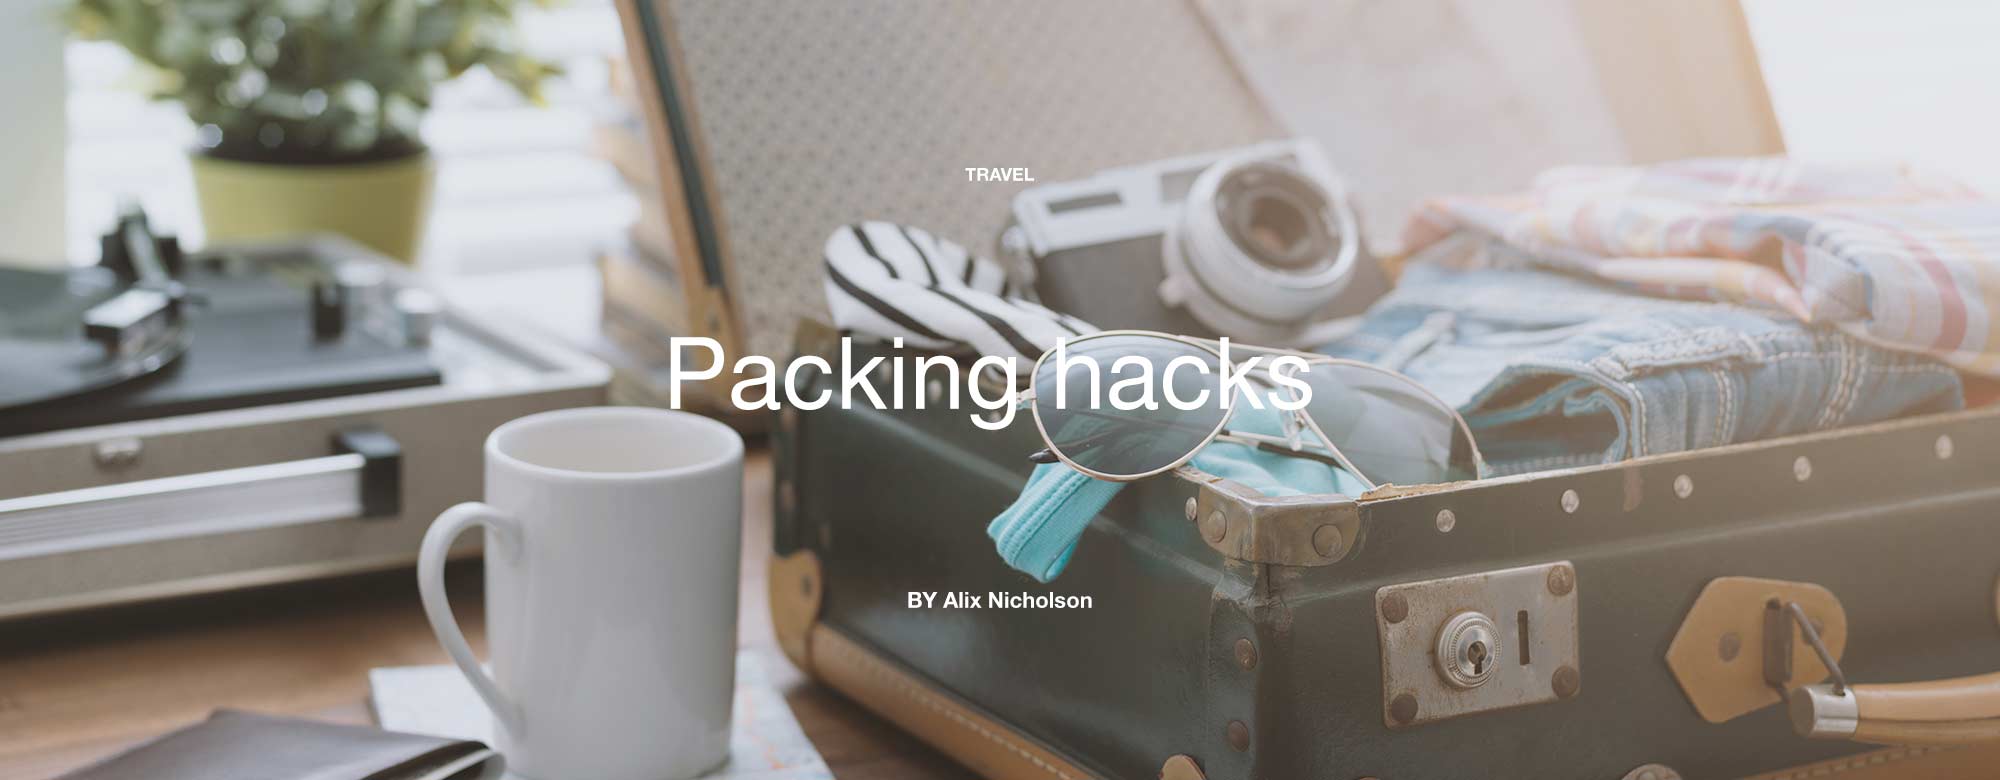 Packing hacks